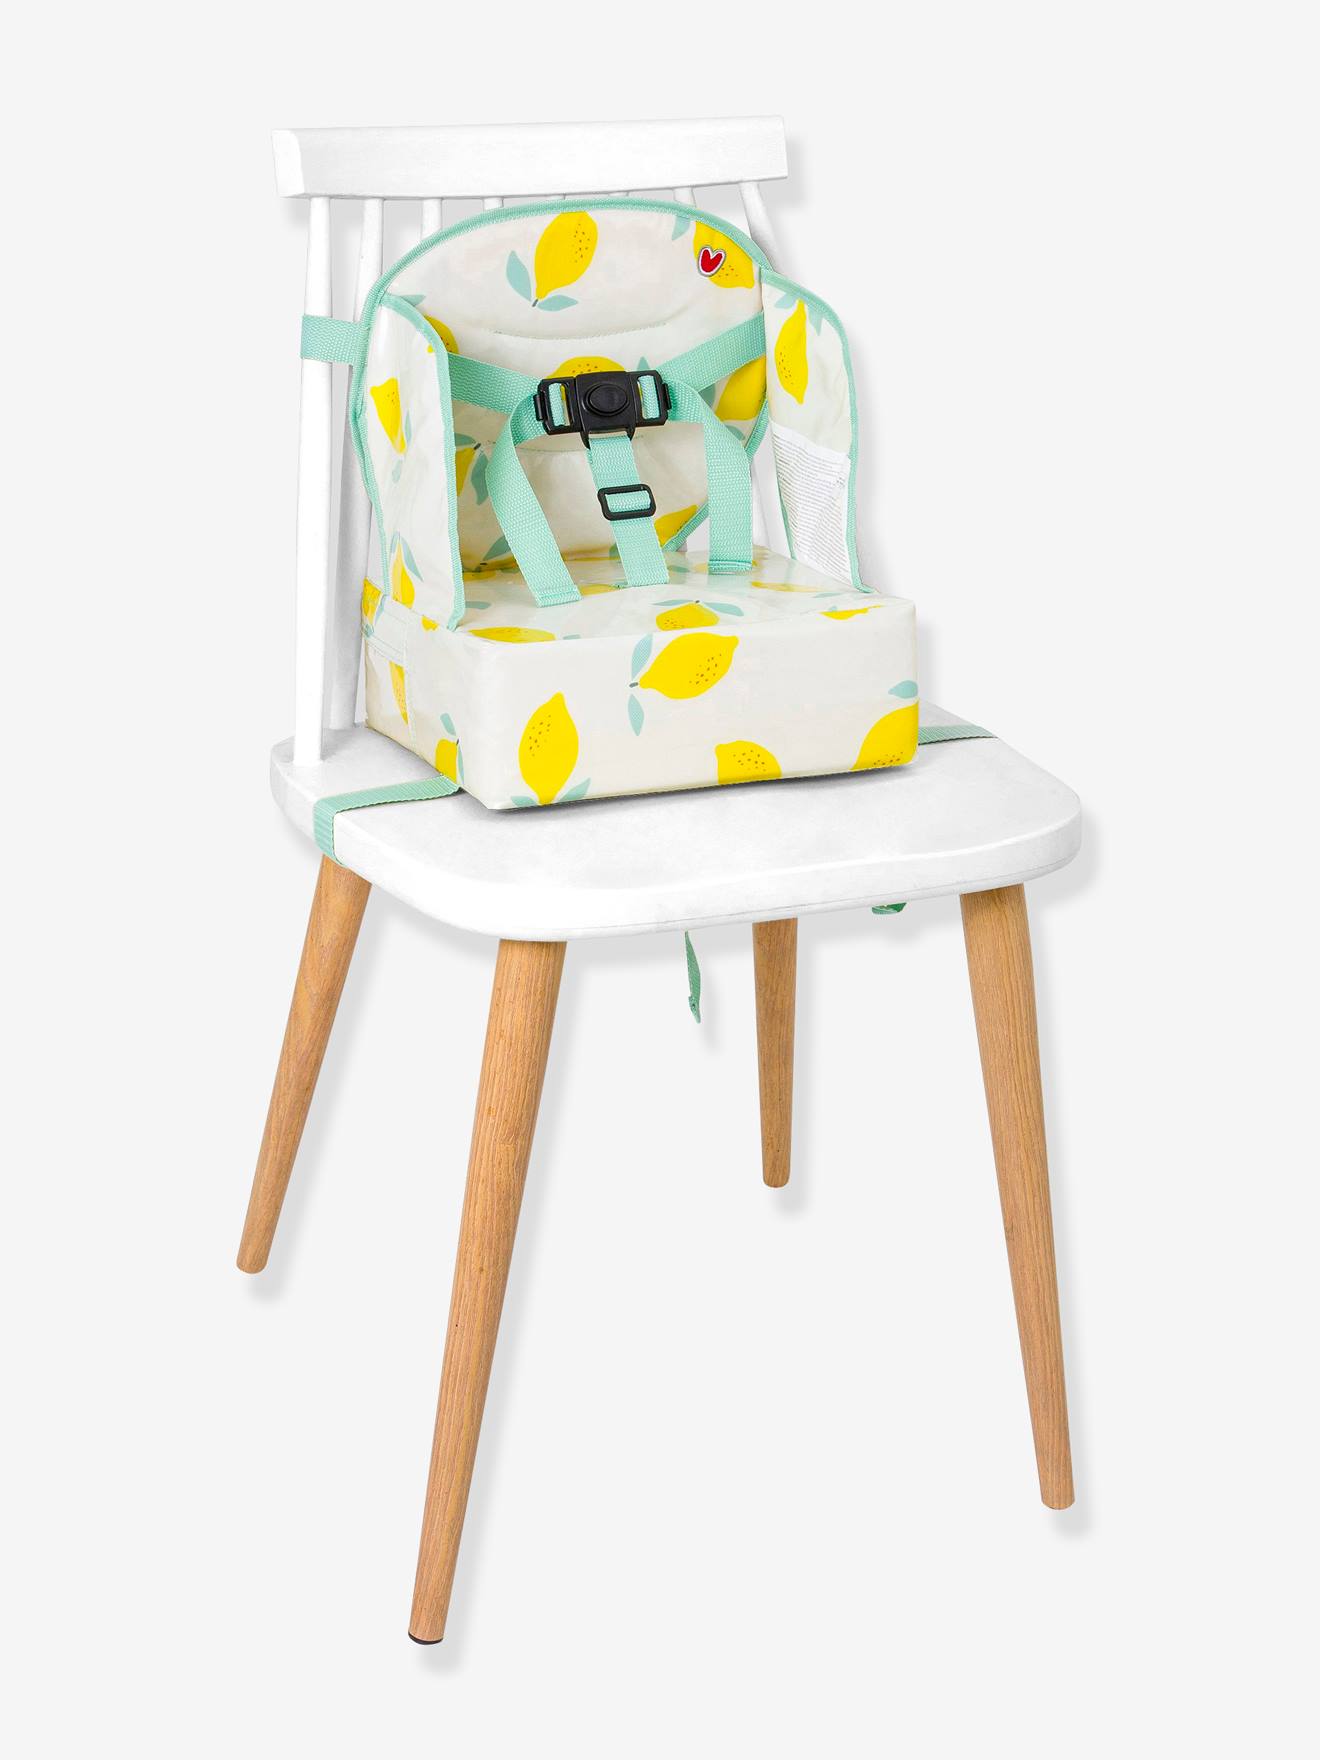 Trona para bebés - Asiento, elevador y silla trona para niños - vertbaudet